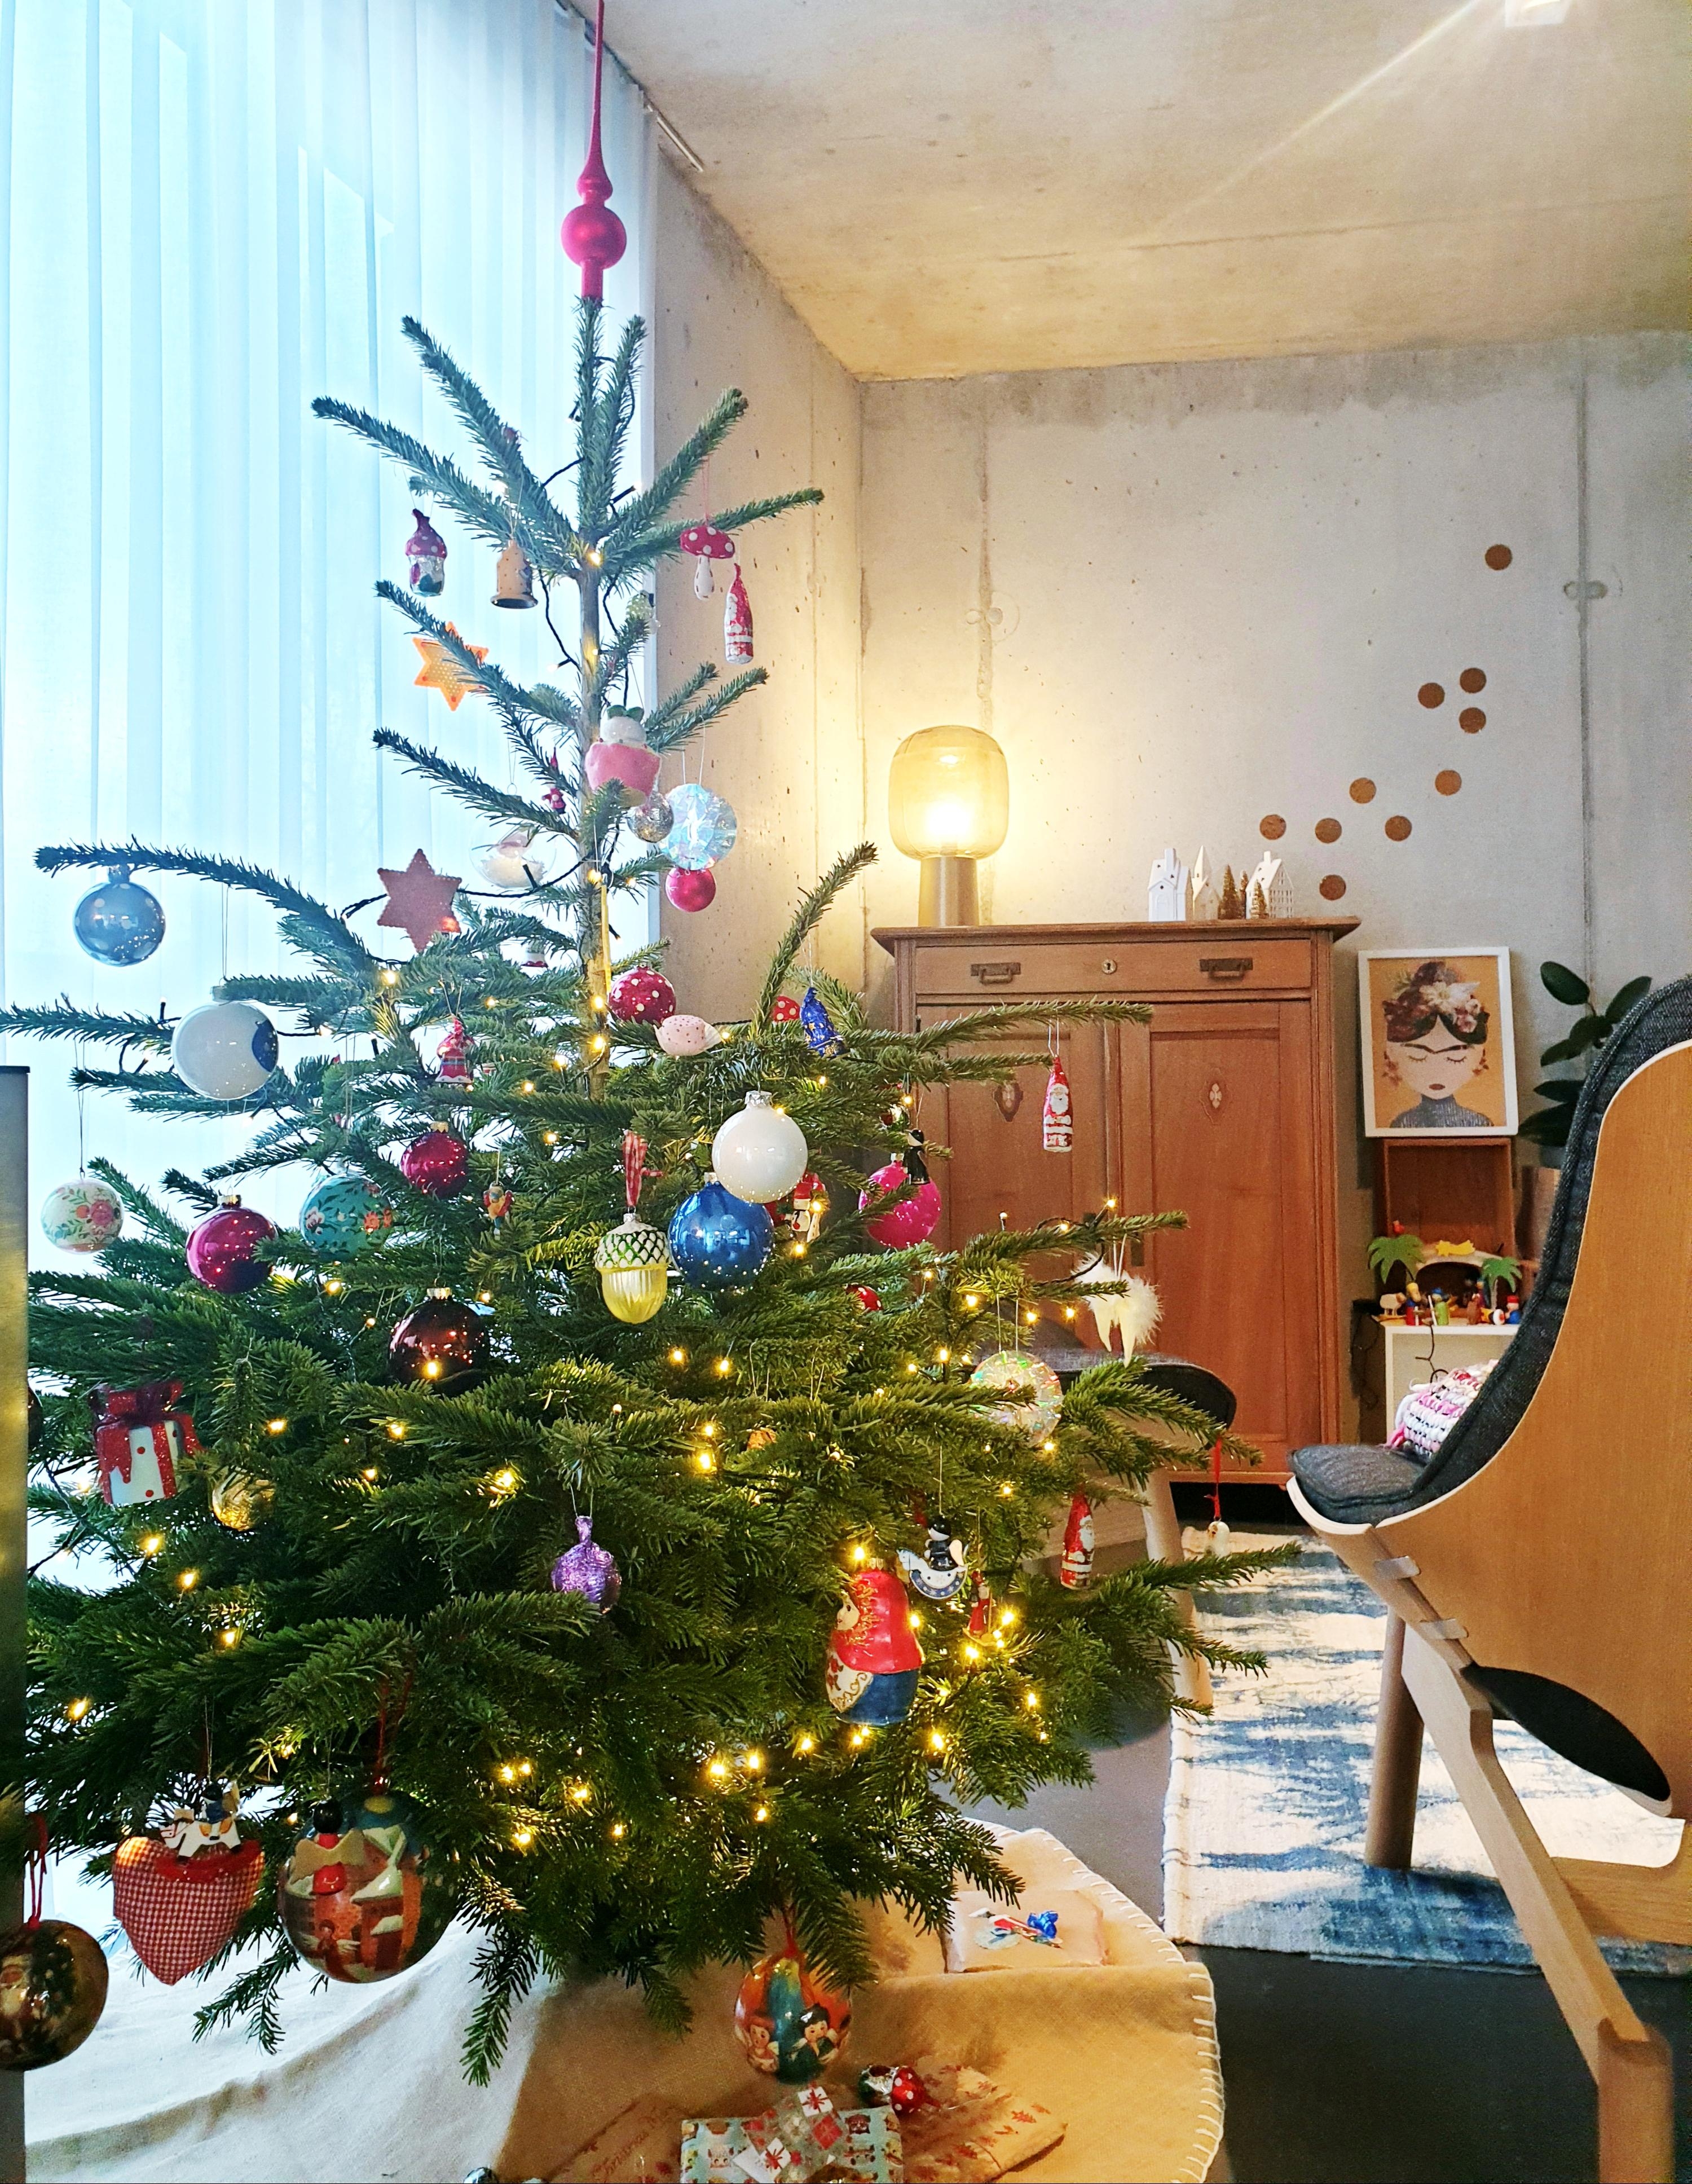 Frohe Festtage🌟🌟🌟
Alles drum und dran am unserem Weihnachtsbaum.
#Weihnachtsbaum#Tannenbaum#Weihnachten